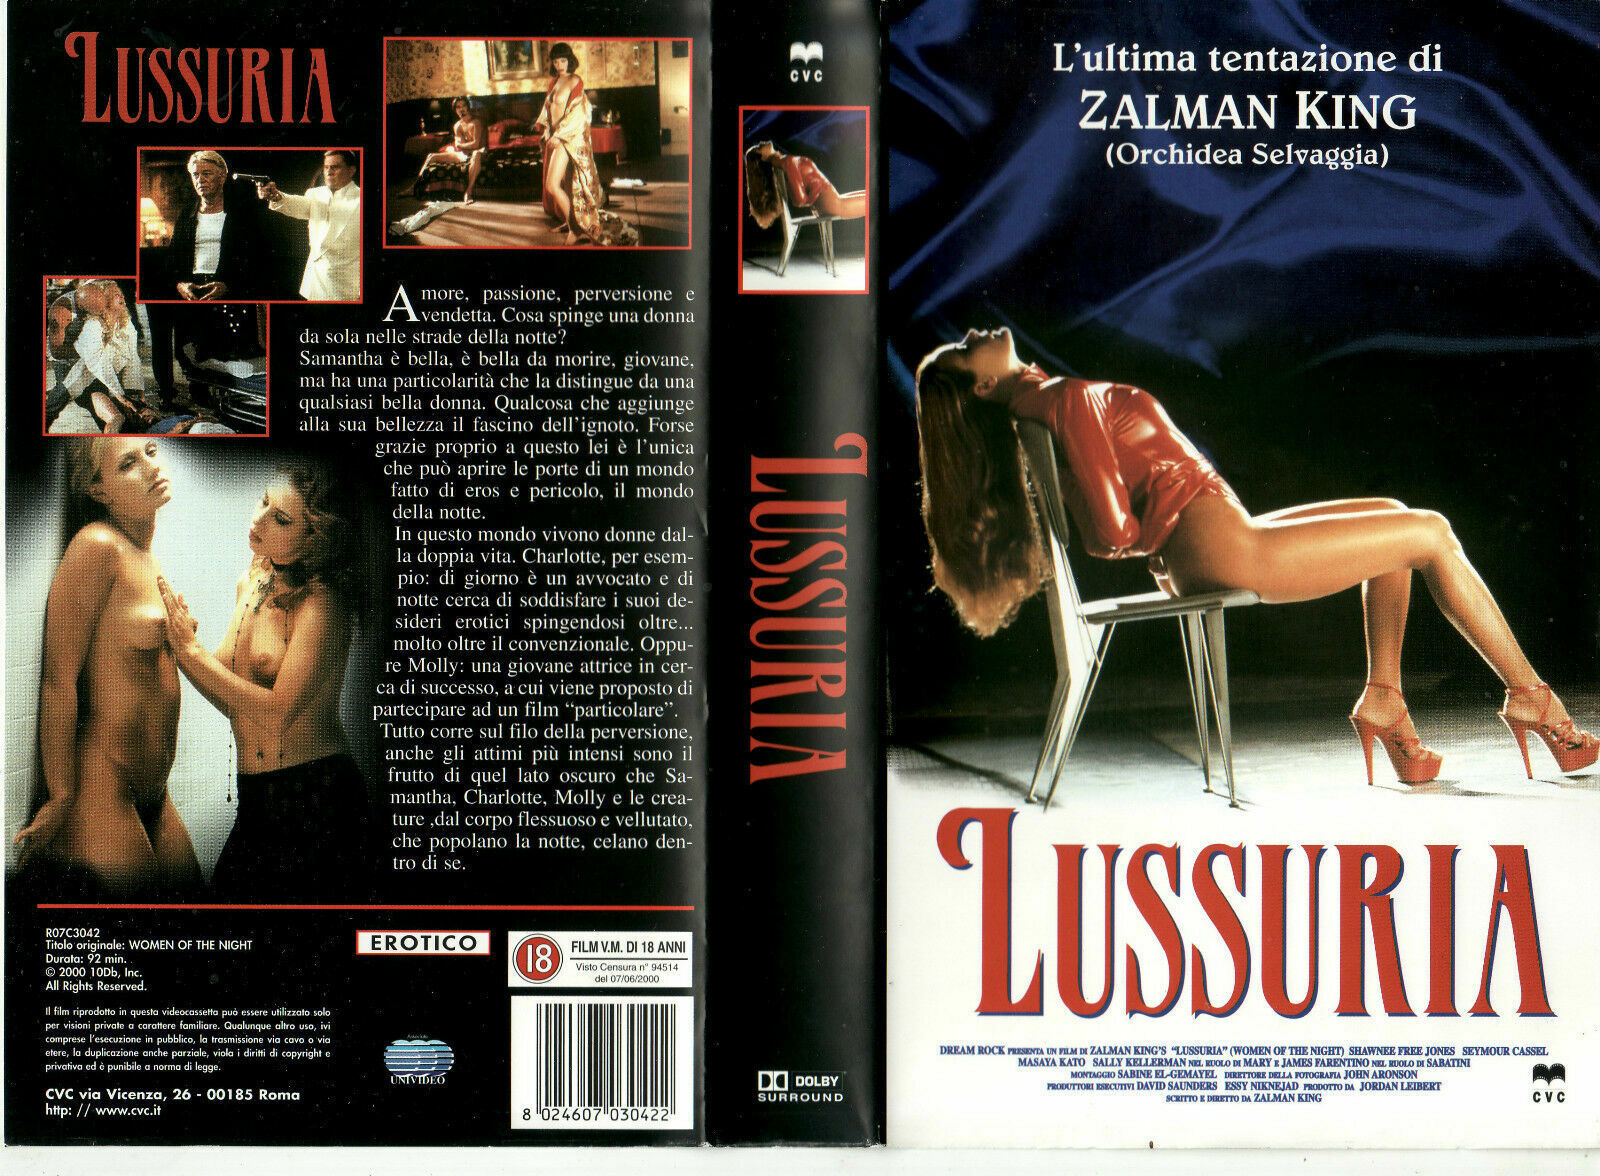 Lussuria - Vhs- 2000 - erotico V.a.M 18anni- Univideo -F